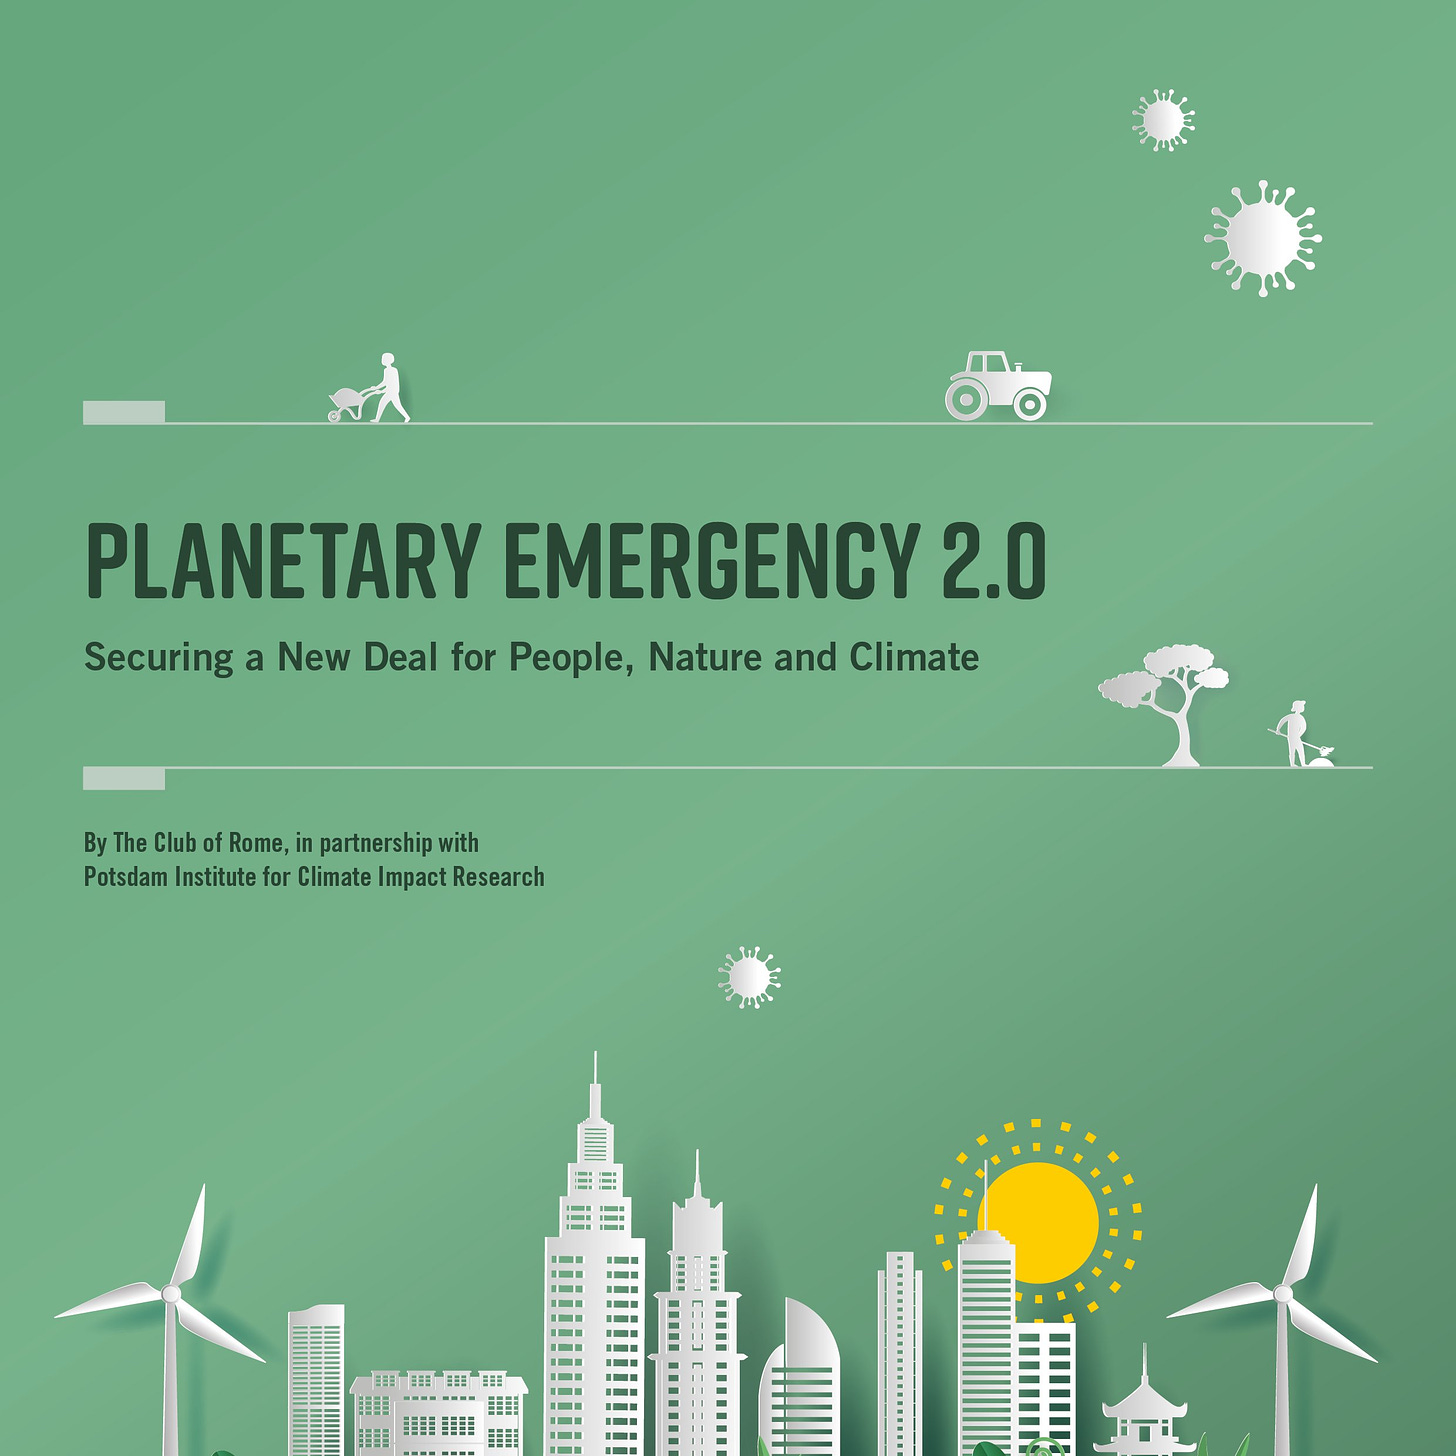 Le Club de Rome sur X : « Le #PlanetaryEmergencyPlan 2.0, mis à jour pour inclure des informations sur la pandémie mondiale, démontre sans équivoque que nous sommes au milieu d'une urgence planétaire.